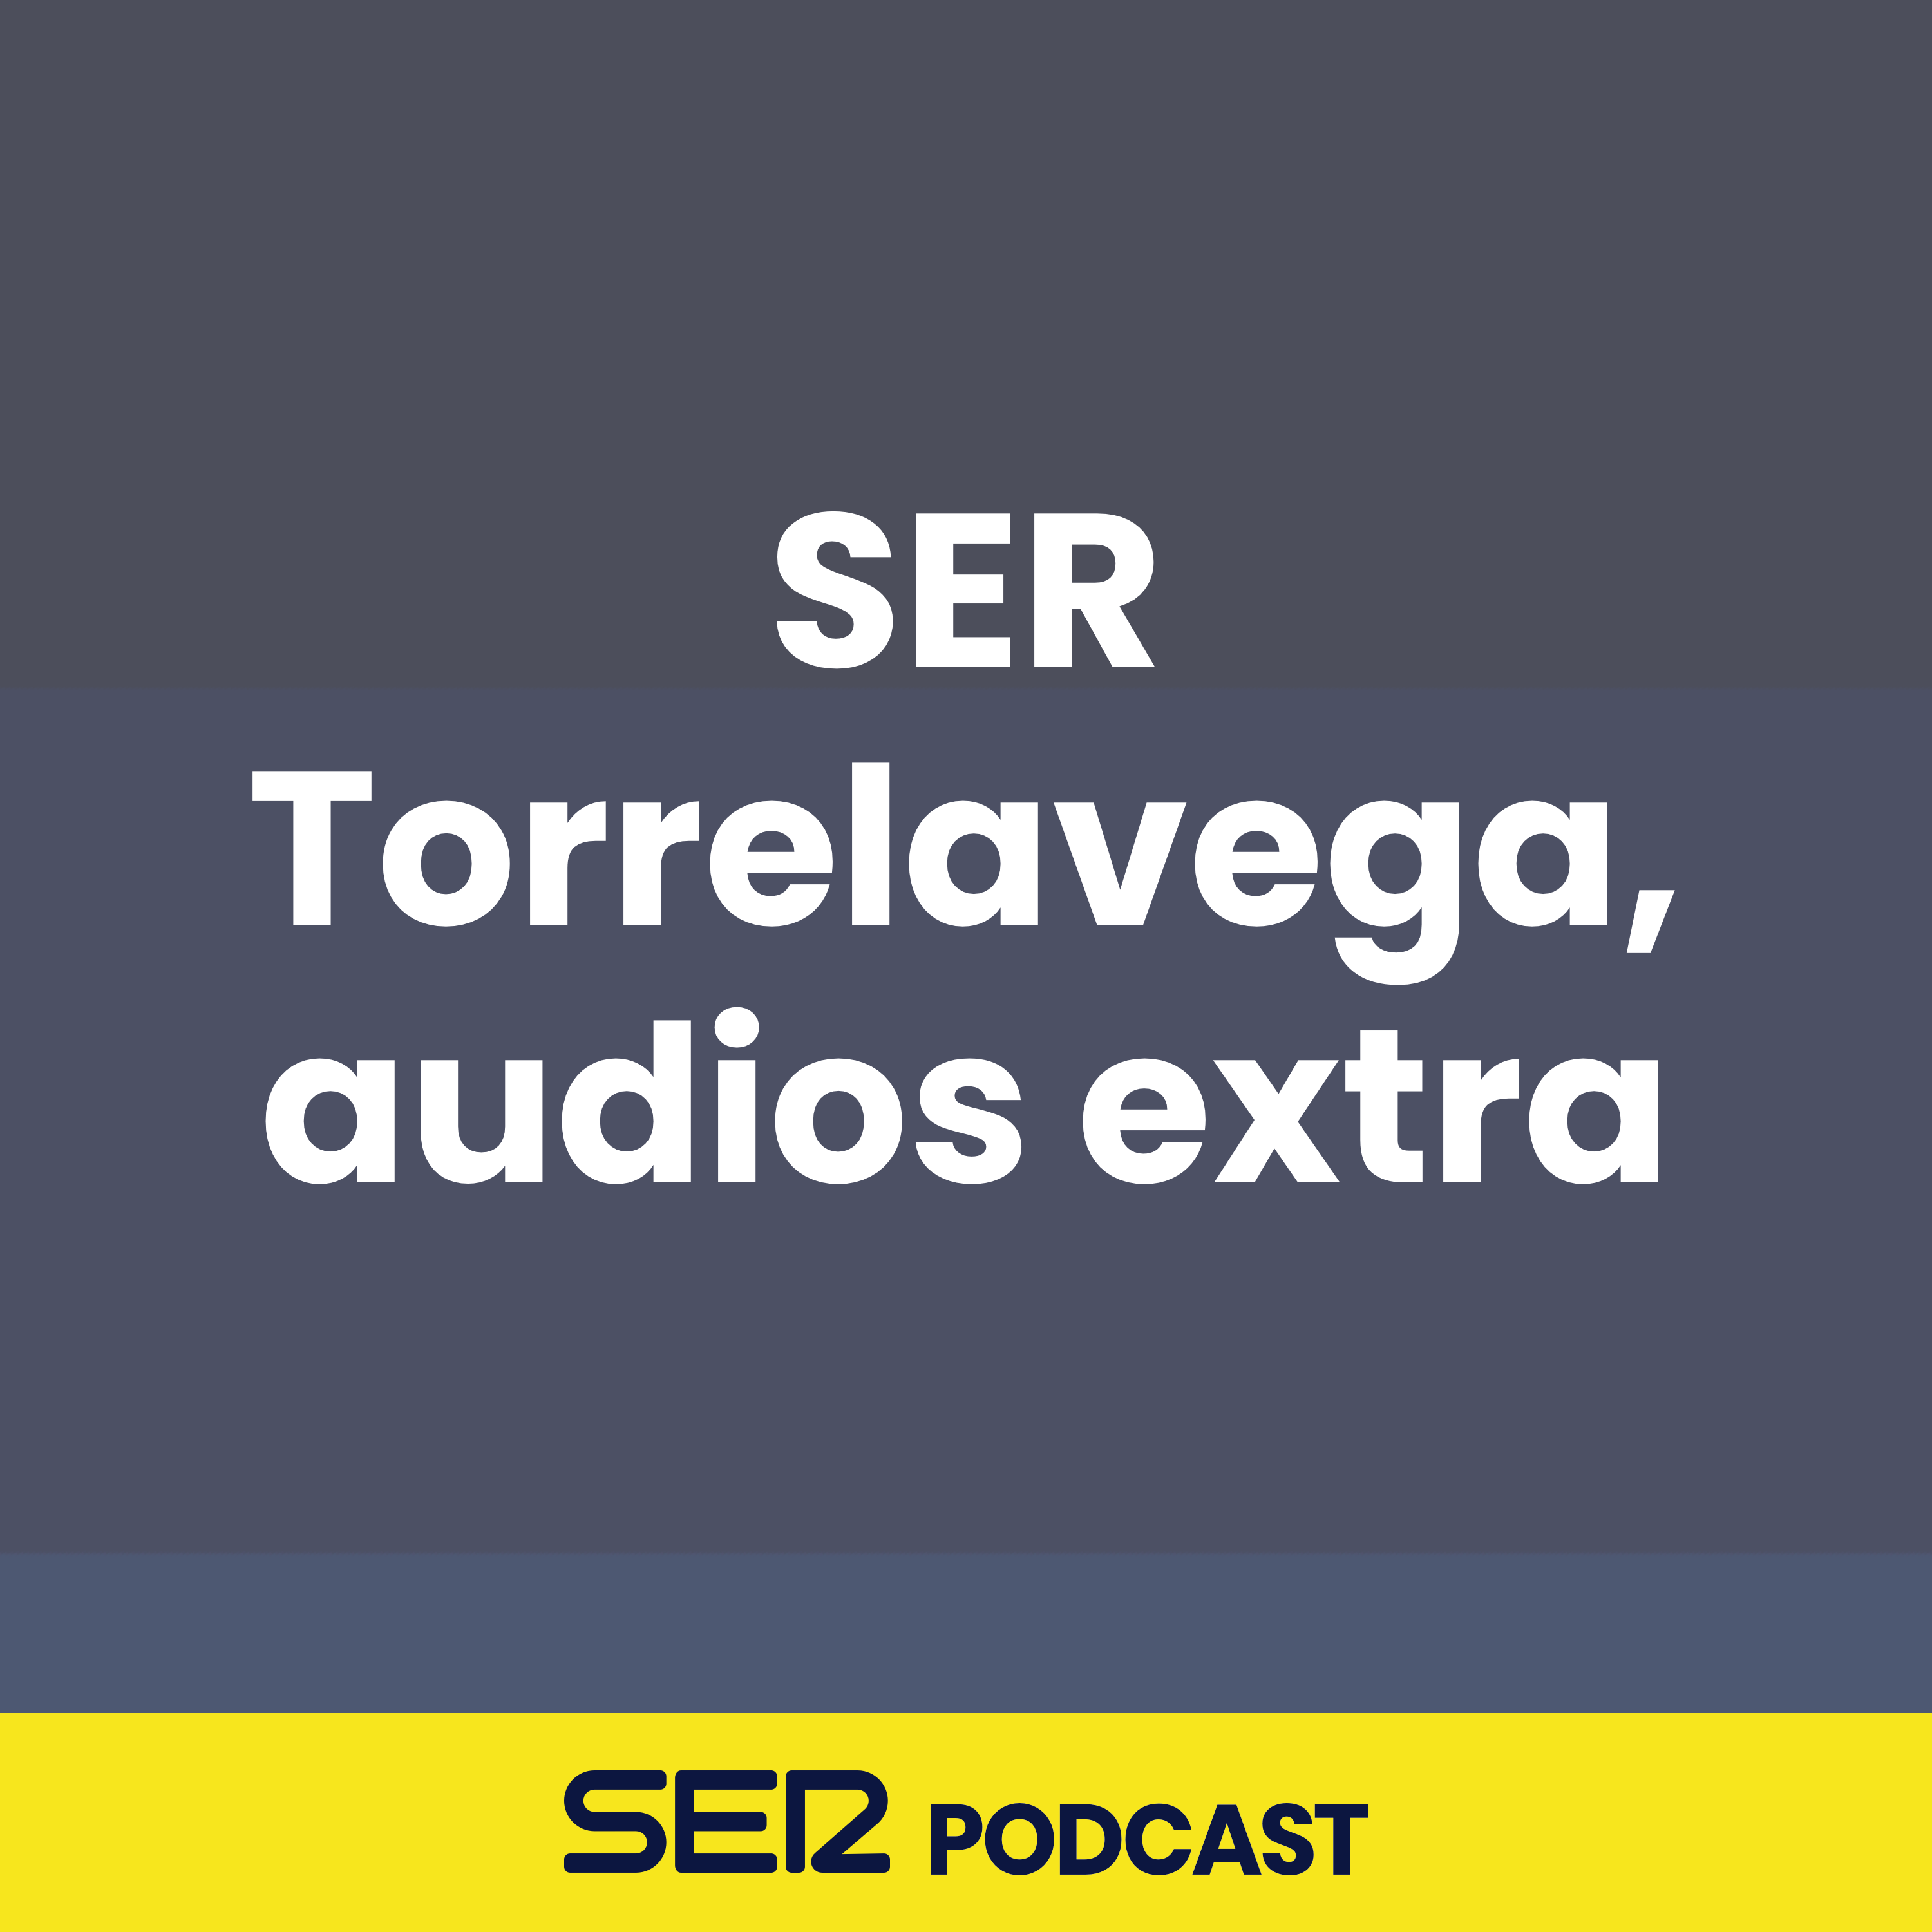 SER Torrelavega, audios extra